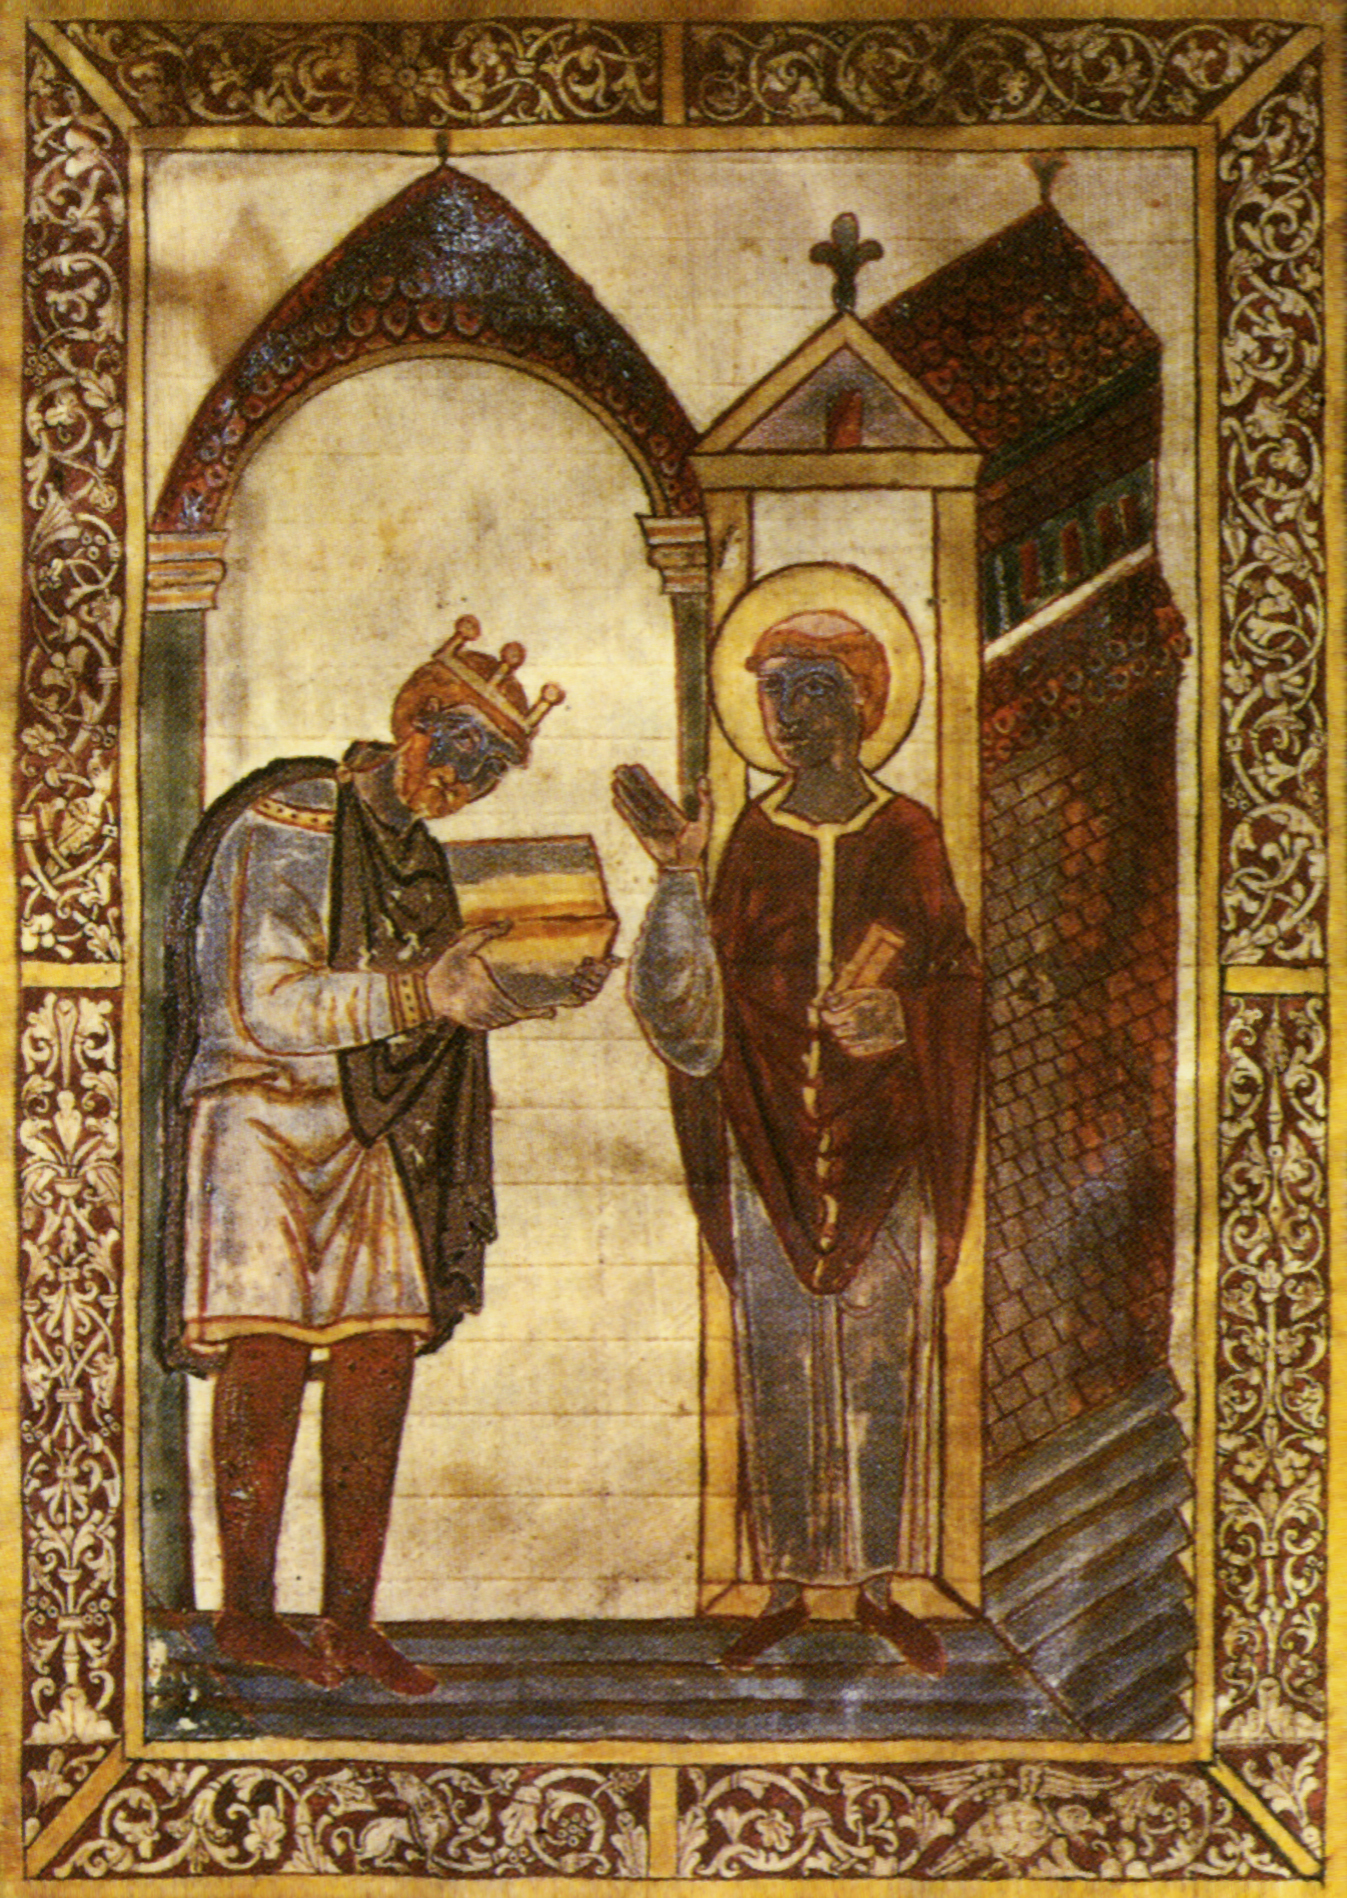 Fronstispicio de la vida de San Cutberto de Beda by Artista anónimo  - c. 930 - 29.2 x 20 cm British Museum